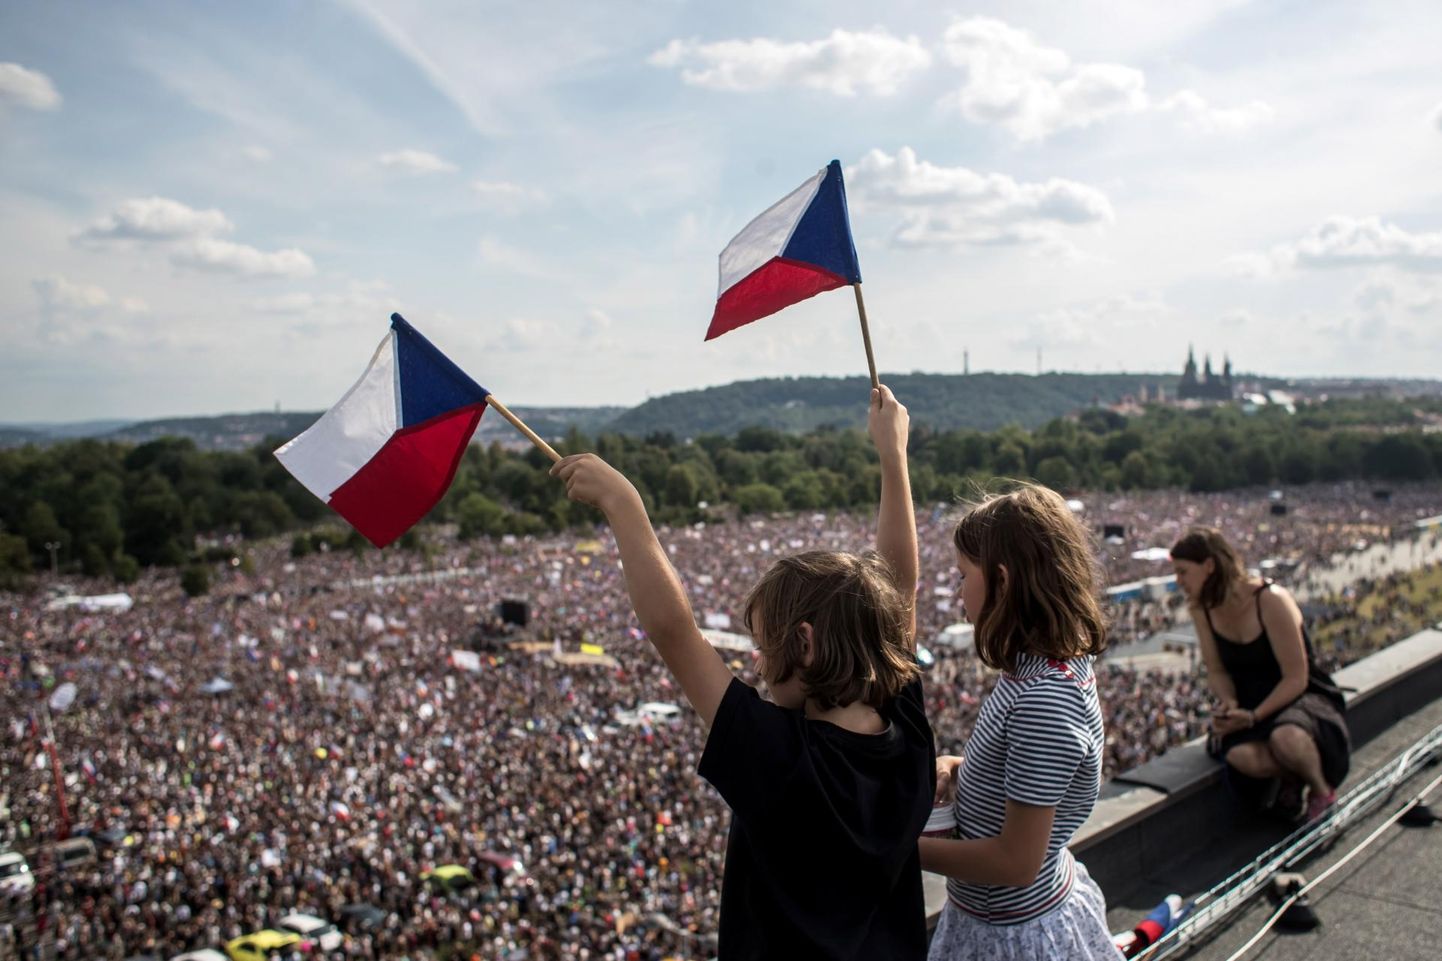 Letná parki Prahas kogunes pooleteise nädala eest peaminister Andrej Babiši vastu meelt avaldama ligi 300 000 inimest. Sellist rahvahulka pole Praha tänavatel nähtud juba kolm aastakümmet, alates kommunistlikule režiimile lõpu teinud sametrevolutsioonist.